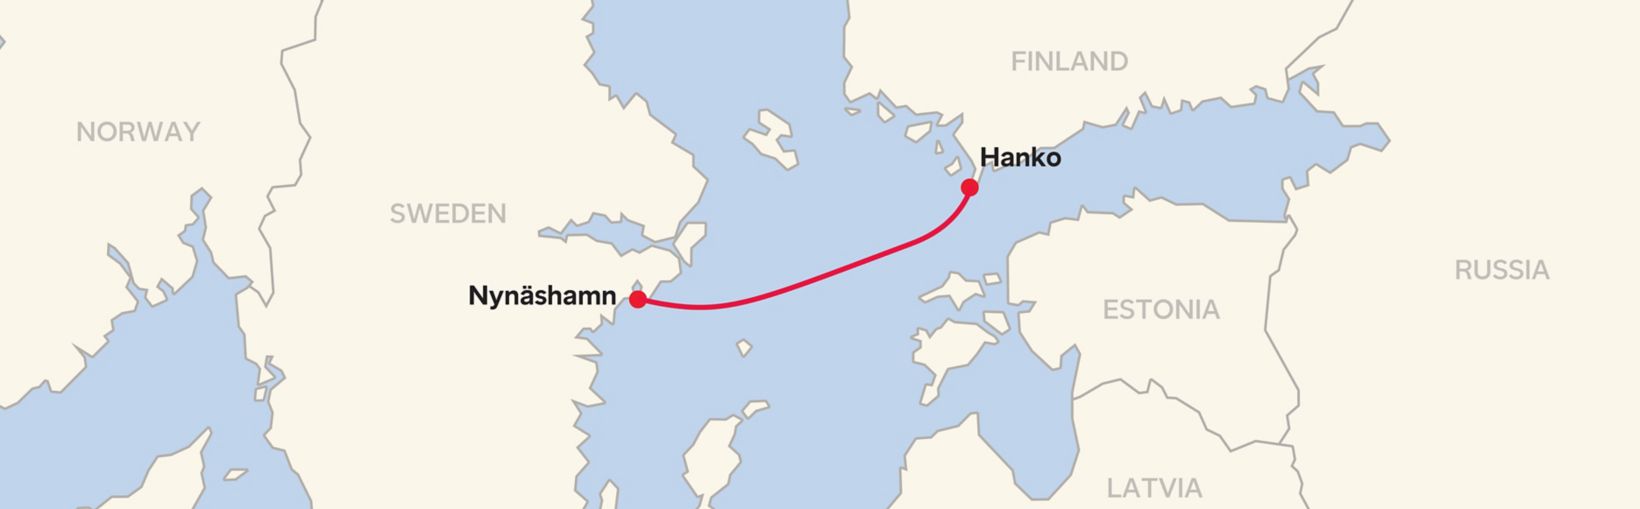 Mostrando la ruta del ferry entre Nynashamn y Hanko